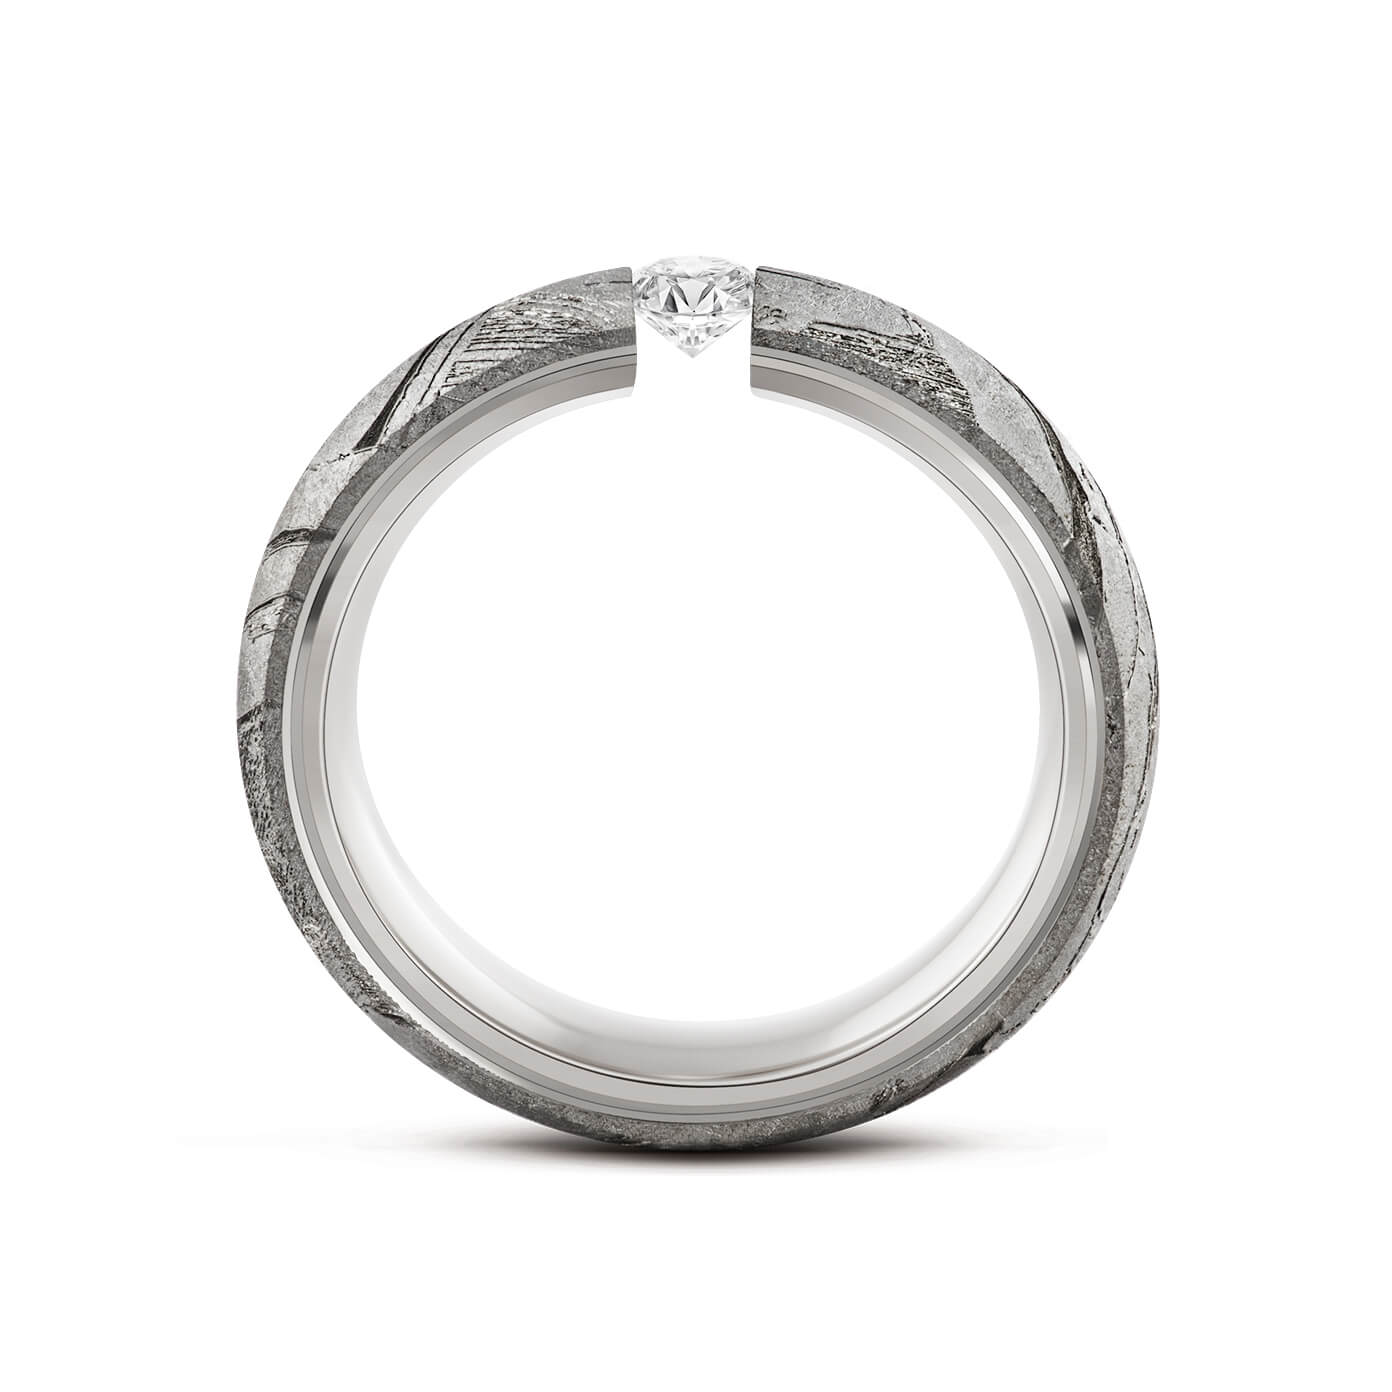 Eleganter Ring aus Meteorit mit wunderschönem metallisch glänzenden Widmanstätten Muster. Innenseite aus Weissgold. Seitlich runde Kanten. Mittig ein Brillant in Spannfassung. Seitlich aufgenommen.